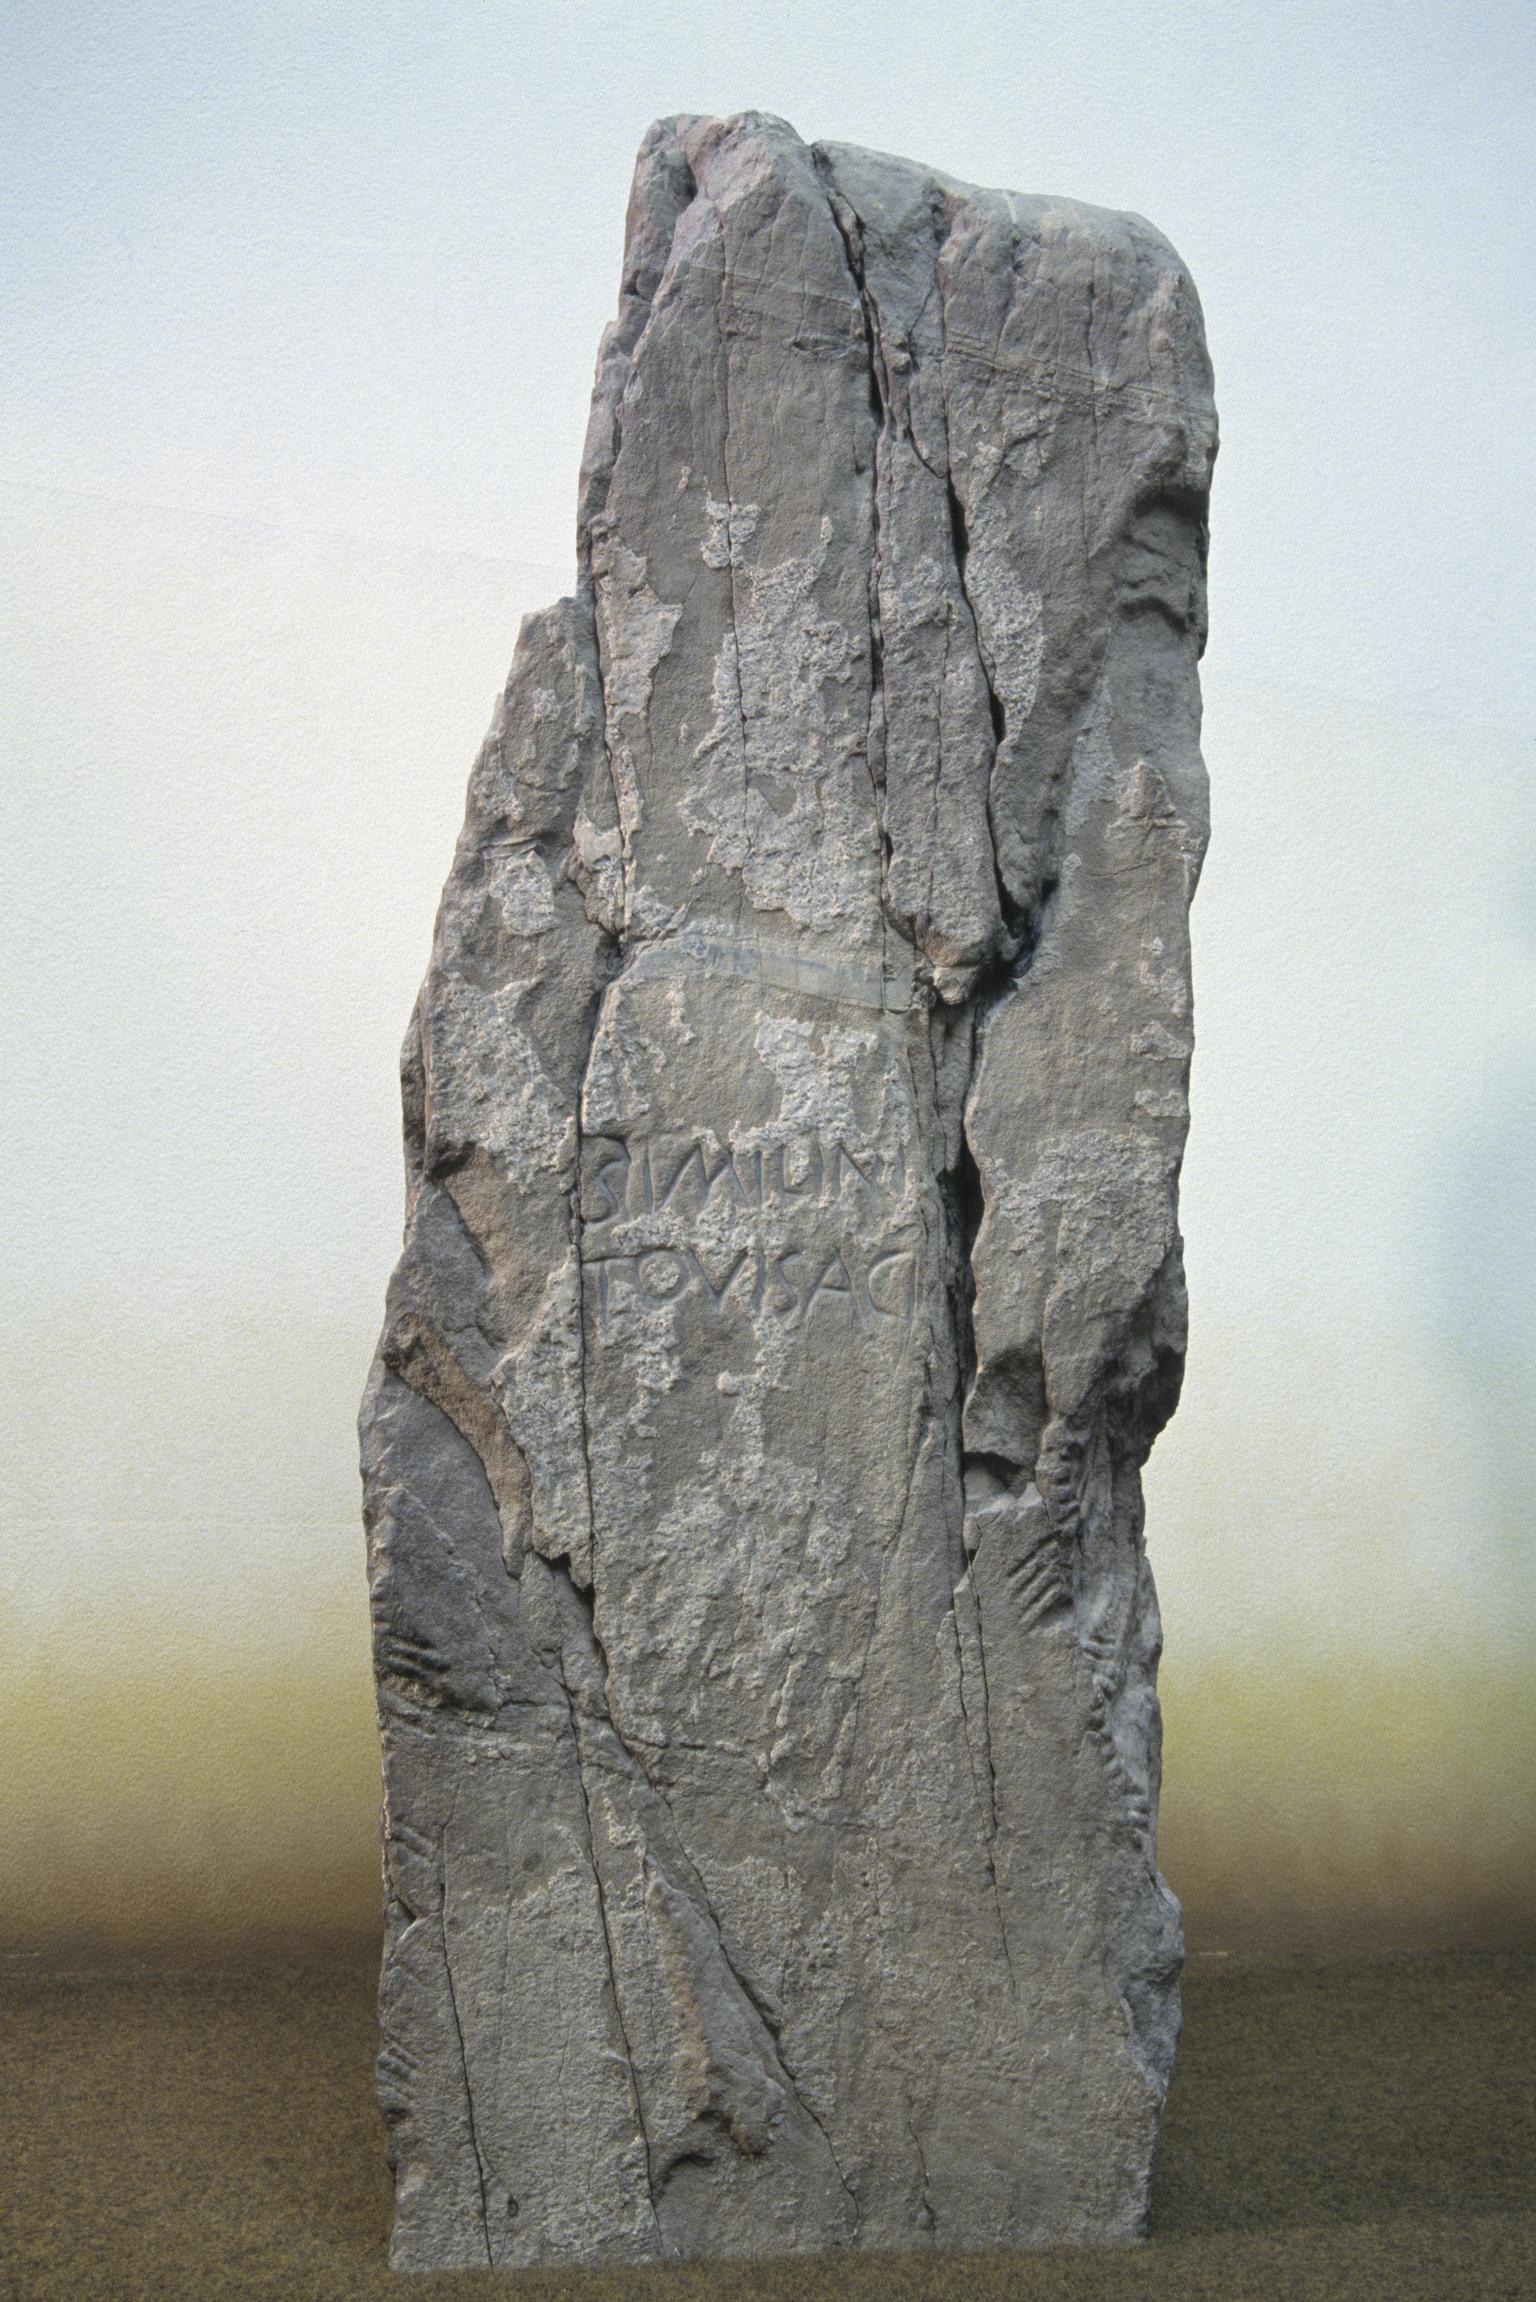 ECM: Clocaenog; Similinus Tovisacus Stone